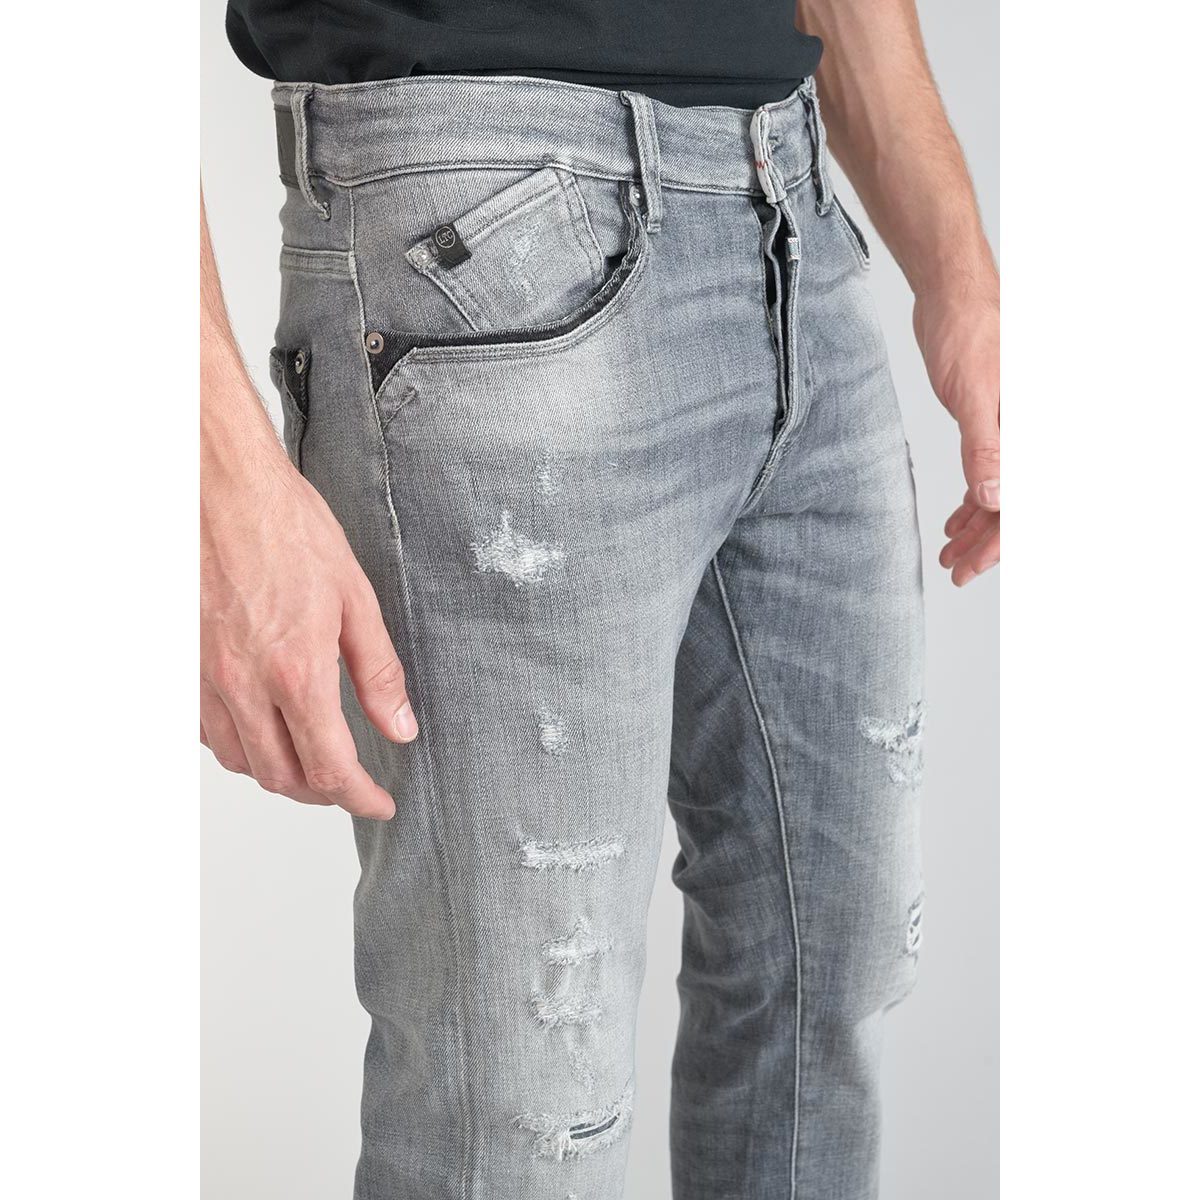 Le Temps des Cerises Gris Triolet 700/11 adjusted jeans destroy gris RFWQr8D2